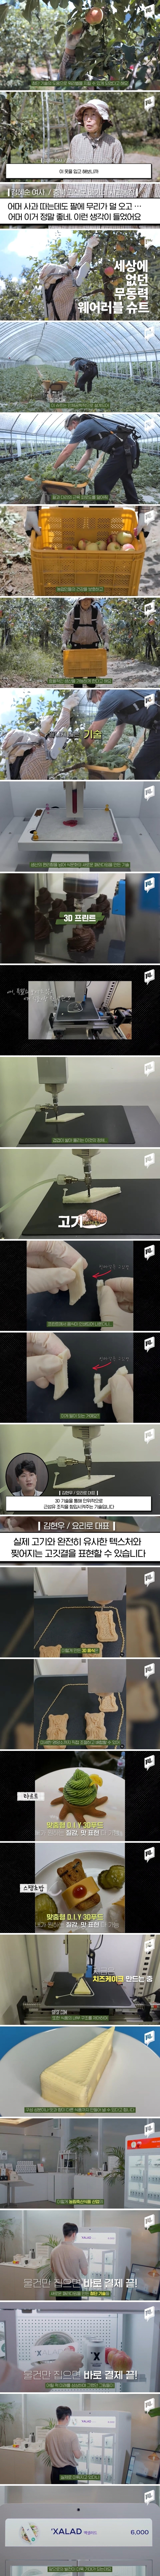 지하철에서 상추 뜯어 먹고, 프린터에서 케이크 인쇄하는 한국 클라스 (2).jpg